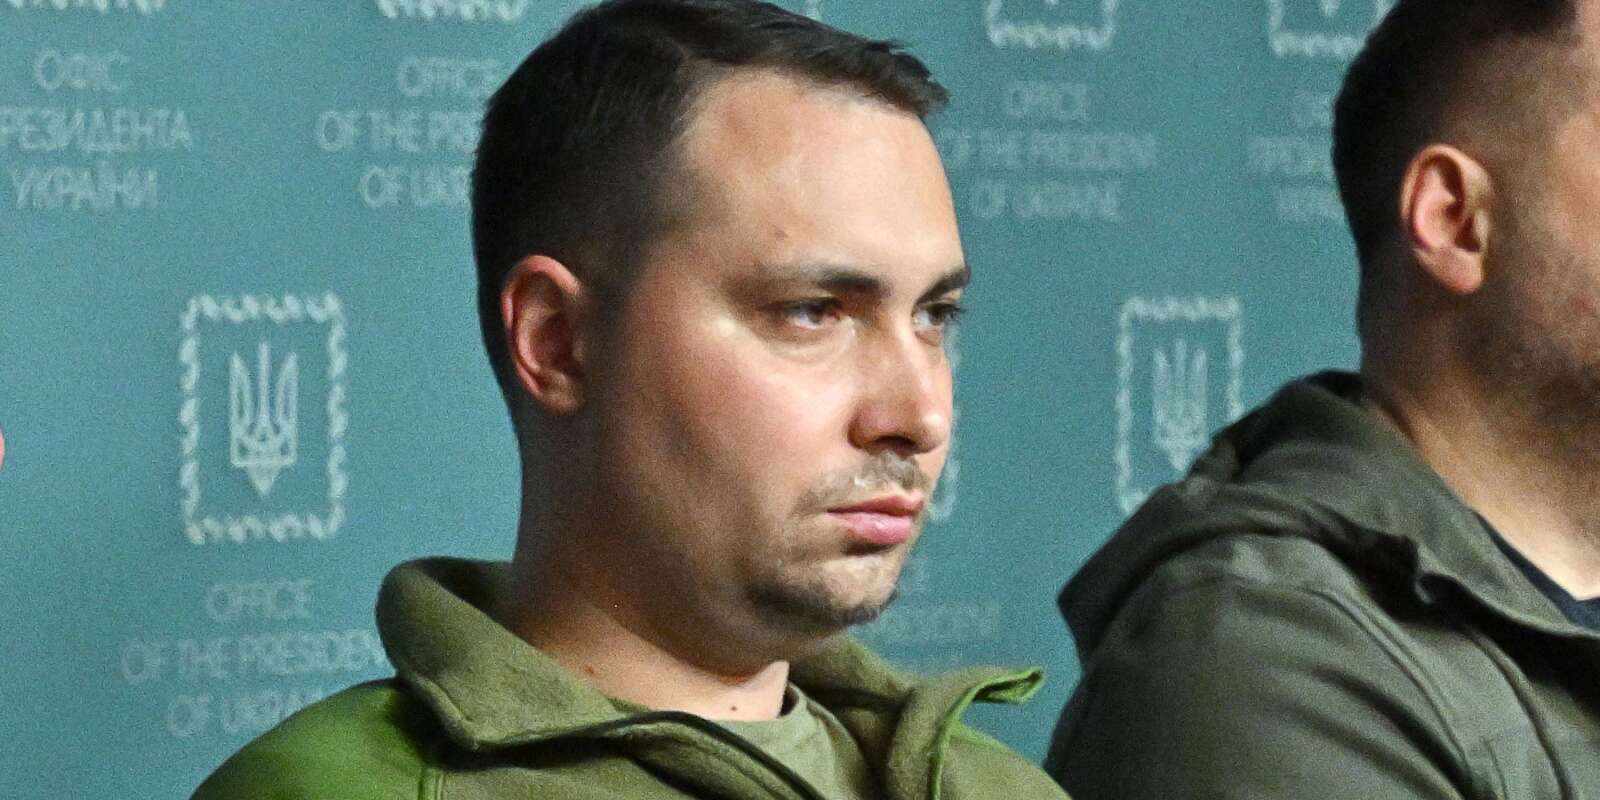 Le nouveau ministre de la défense ukrainien, Kyrylo Boudanov, lors d’une conférence de presse à Kiev, le 22 septembre 2022.